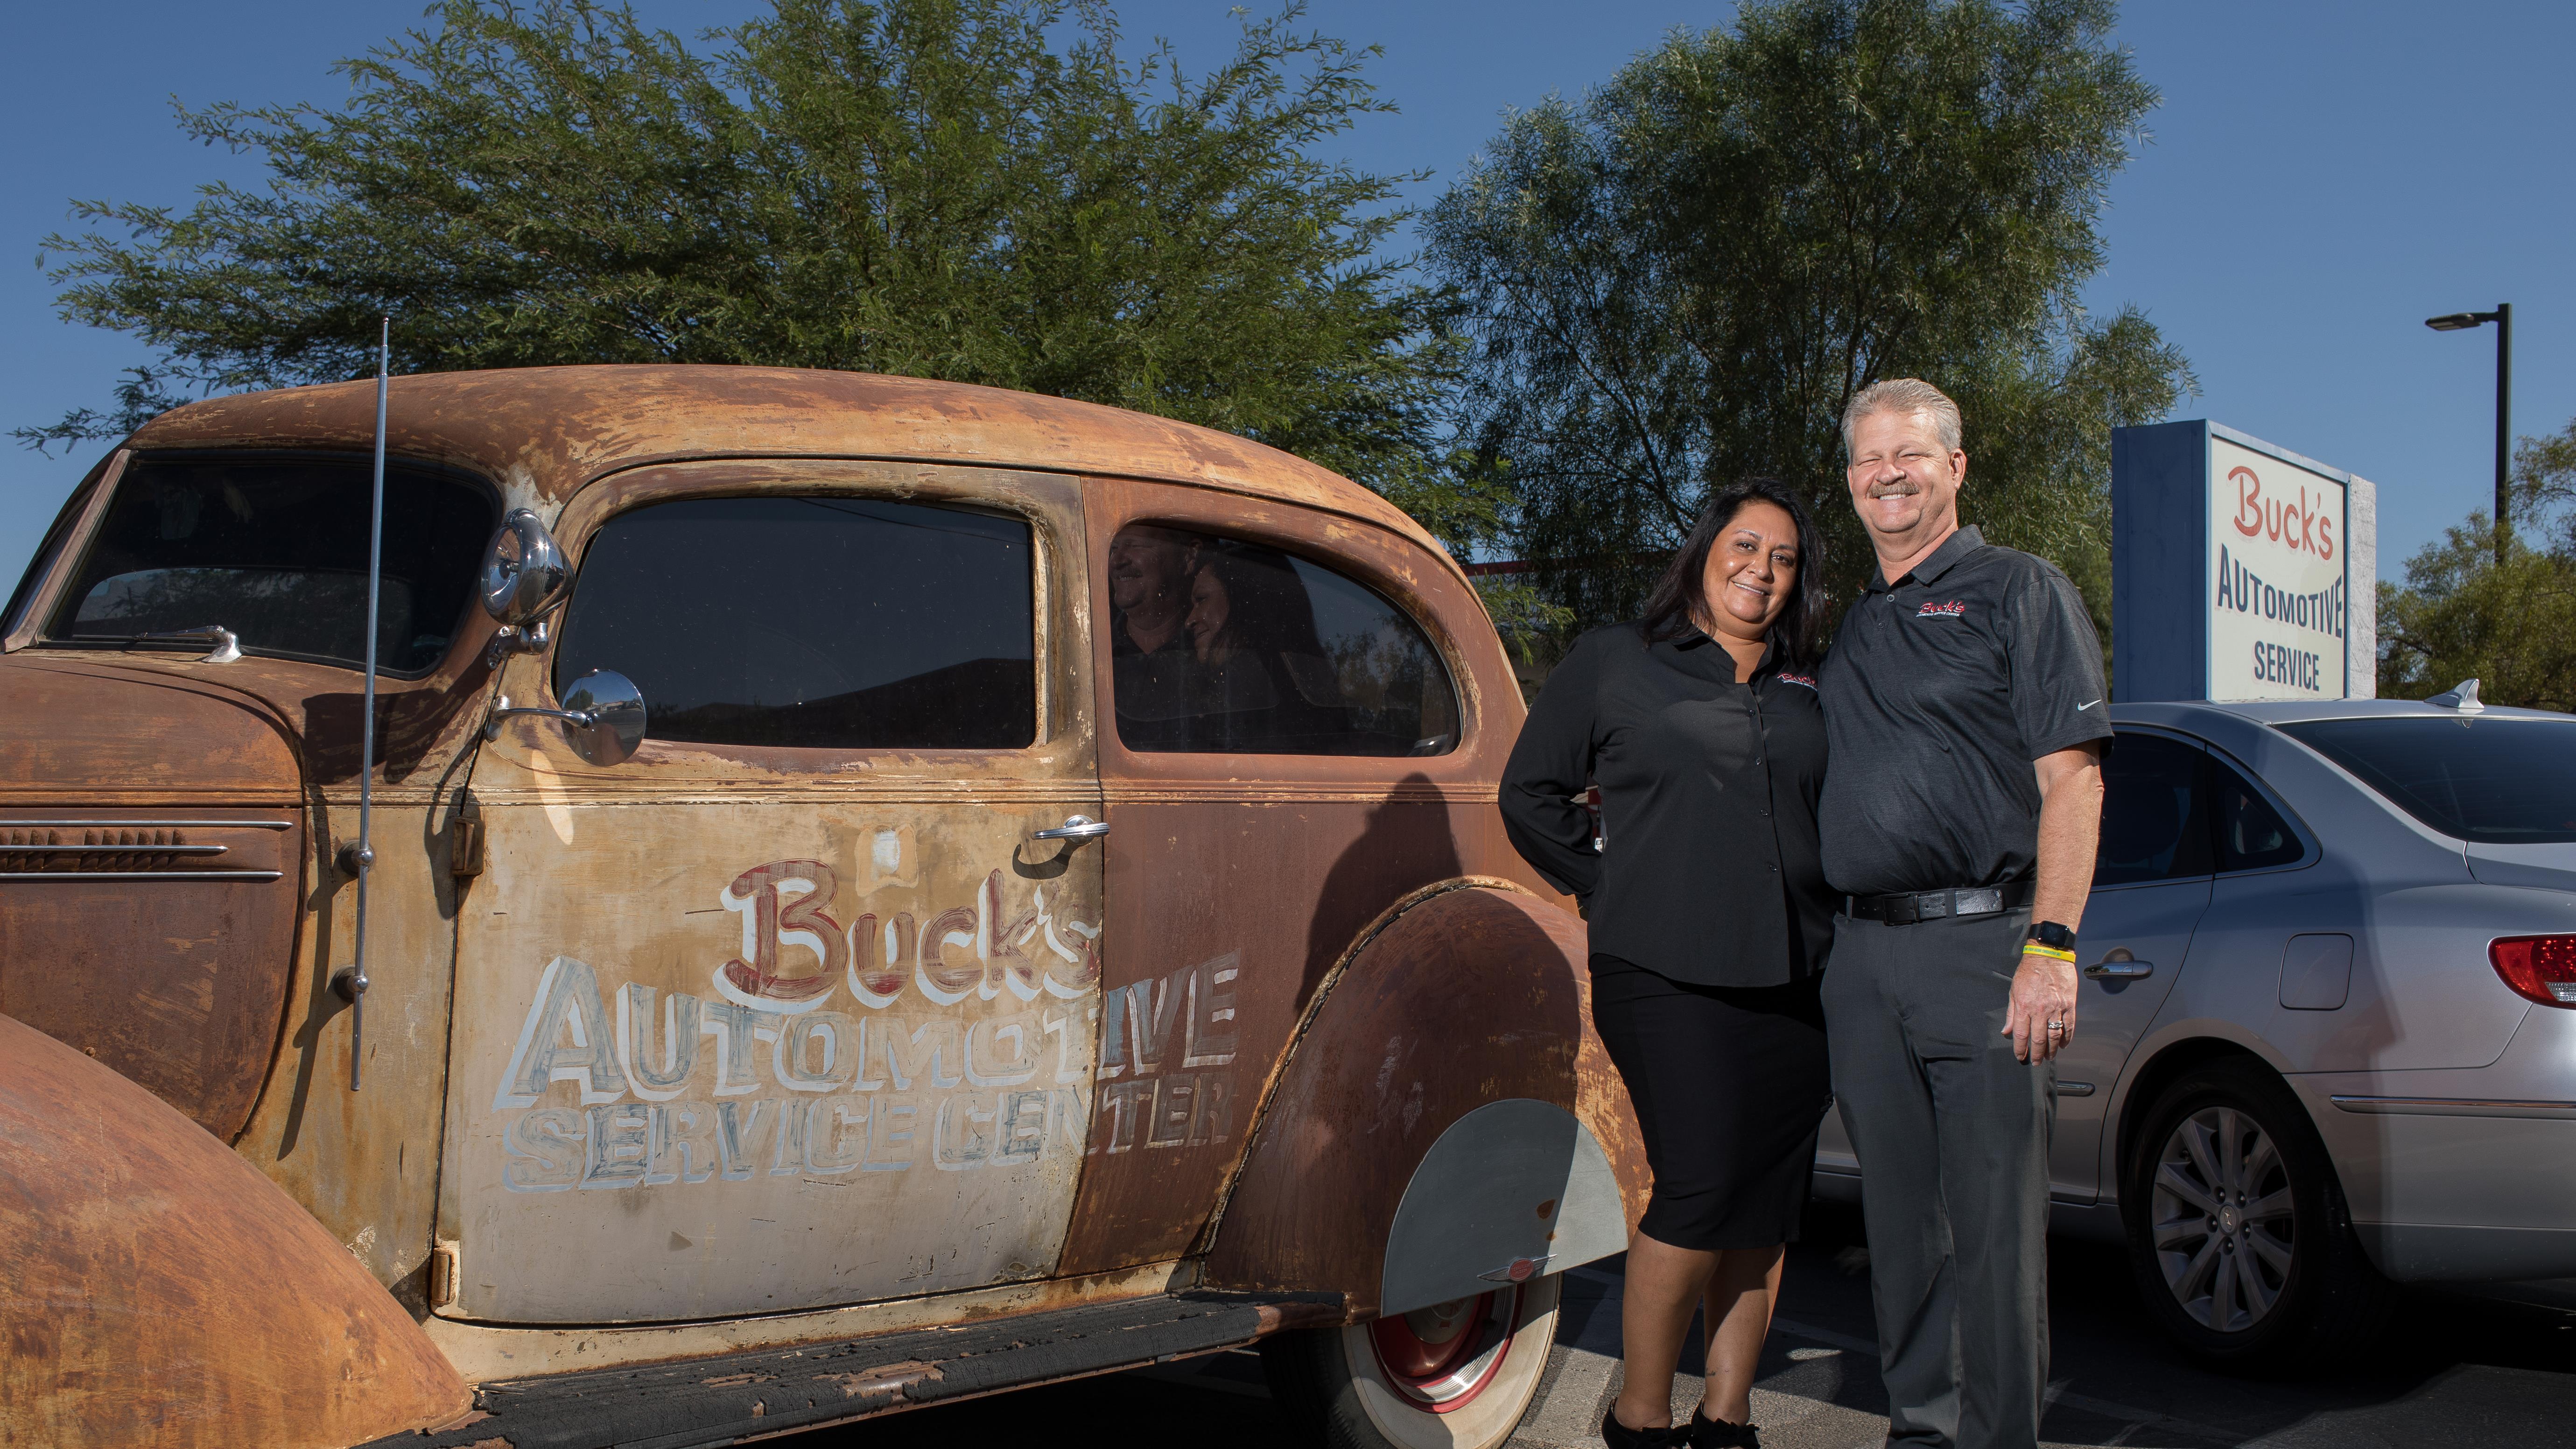 Bucks Automotive/Auto Repair/Service                                                                                                                                                                                     